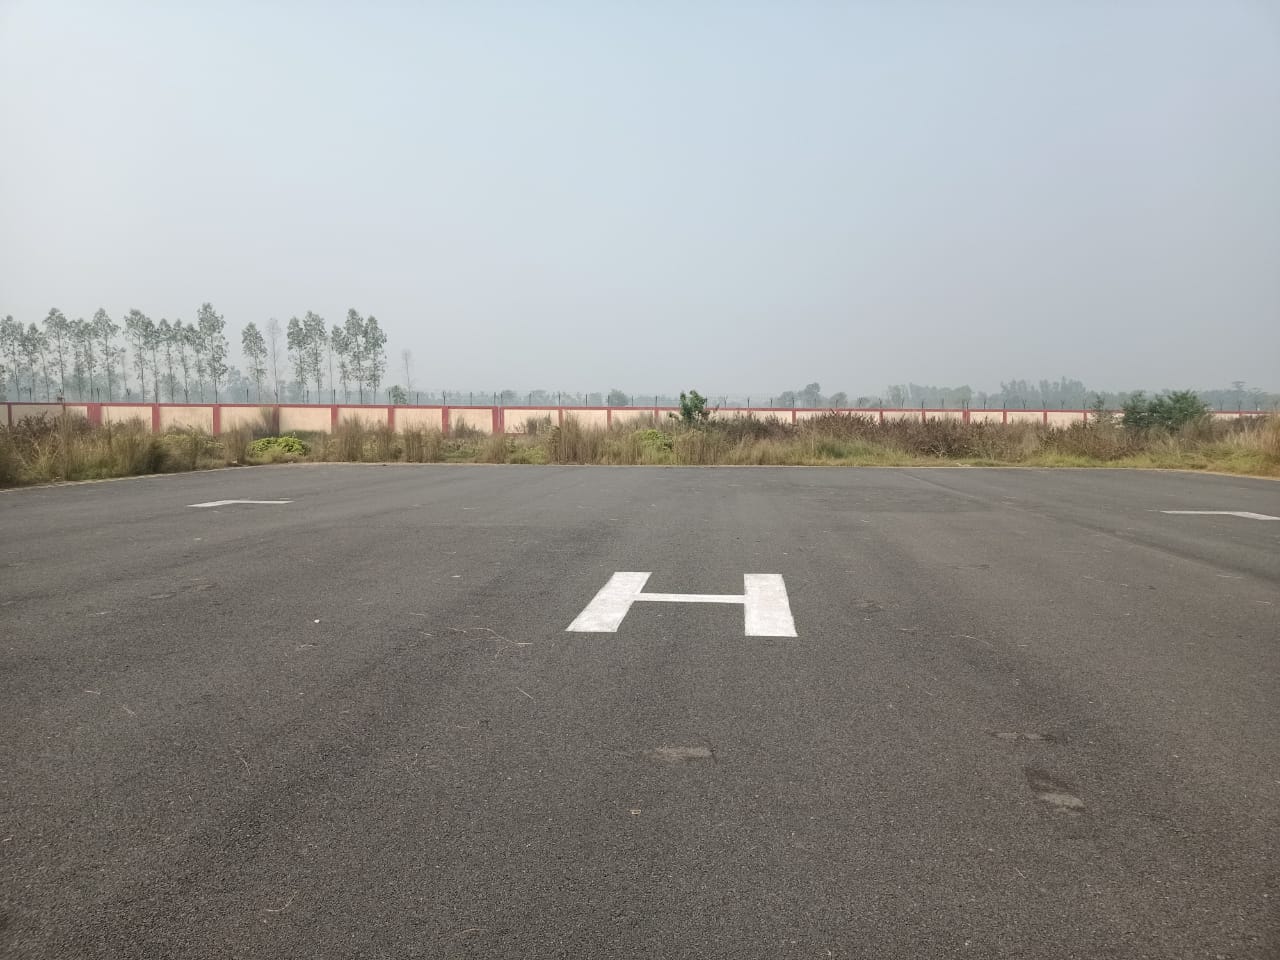 Shravasti airstrip expansion plan